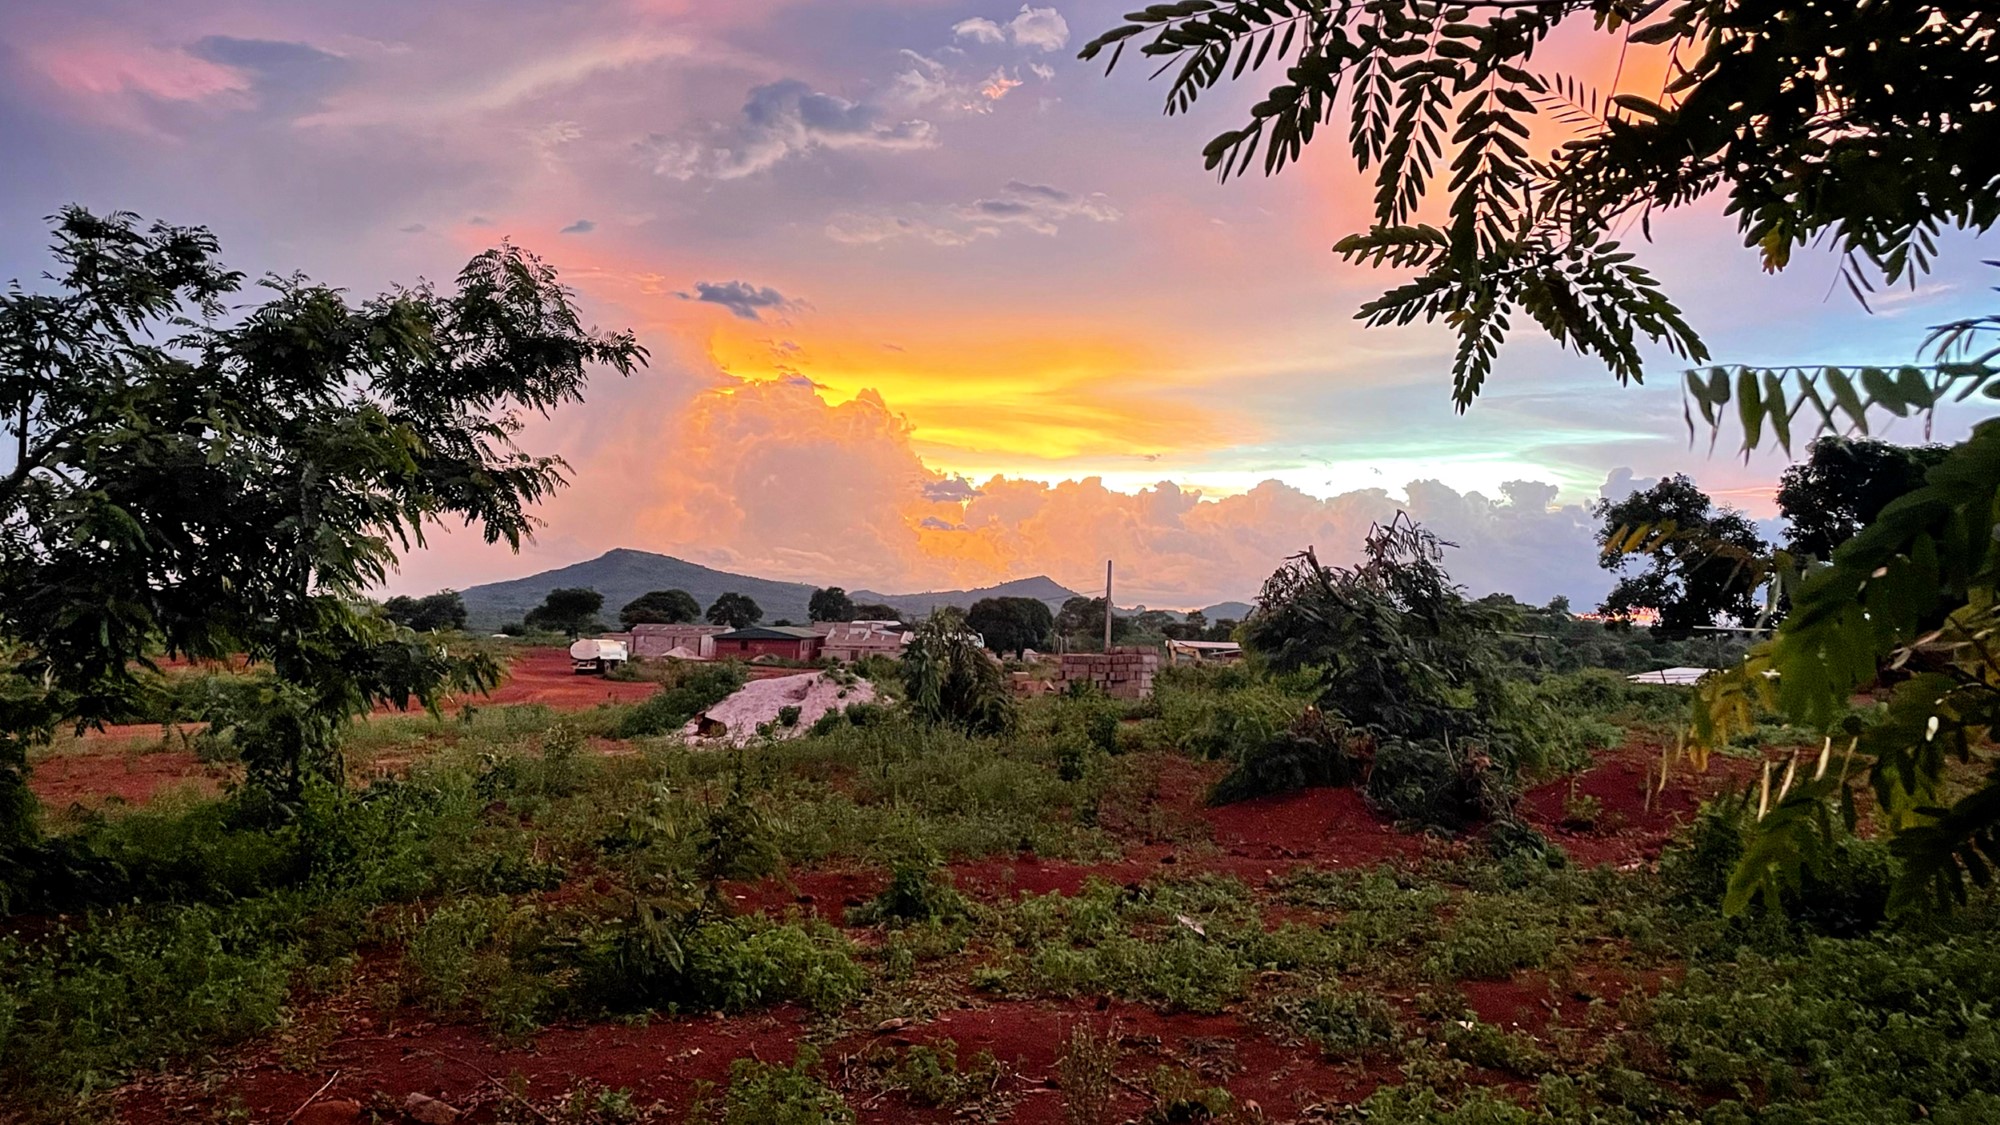 Vakker solnedgang over afrikansk landskap